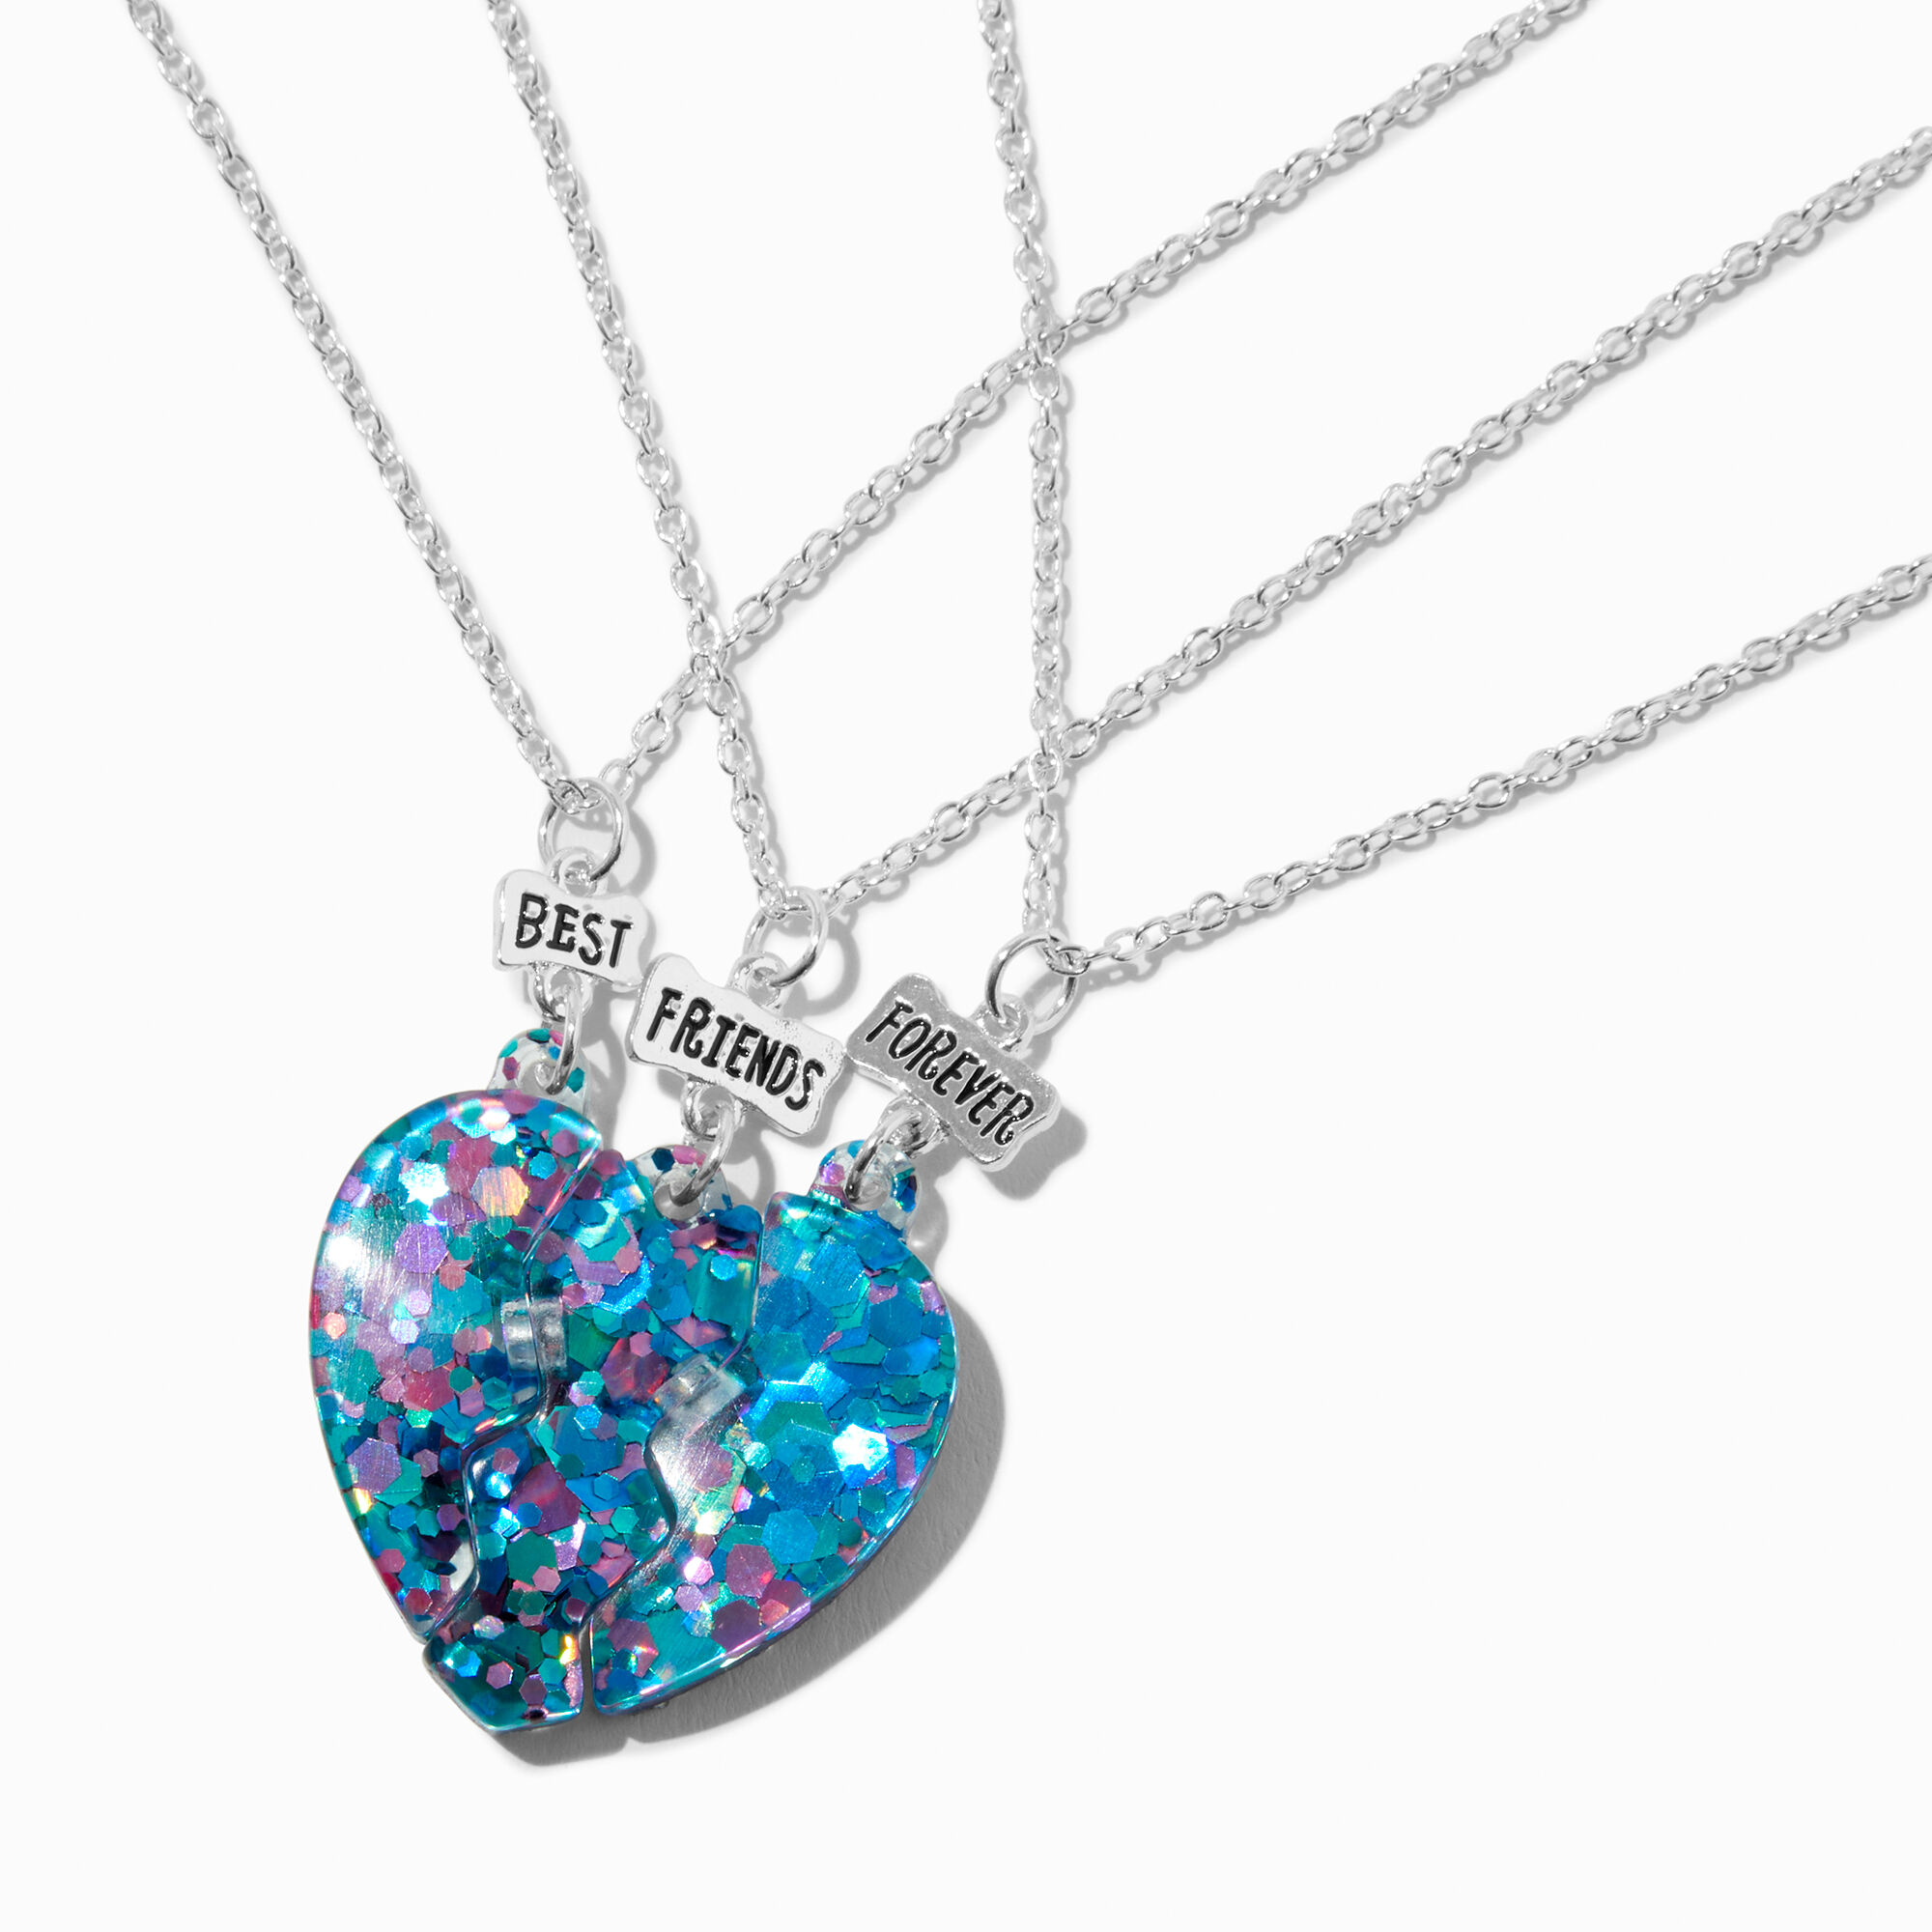 View Claires Best Friends Purple Glitter Heart Pendant Necklaces 3 Pack Blue information